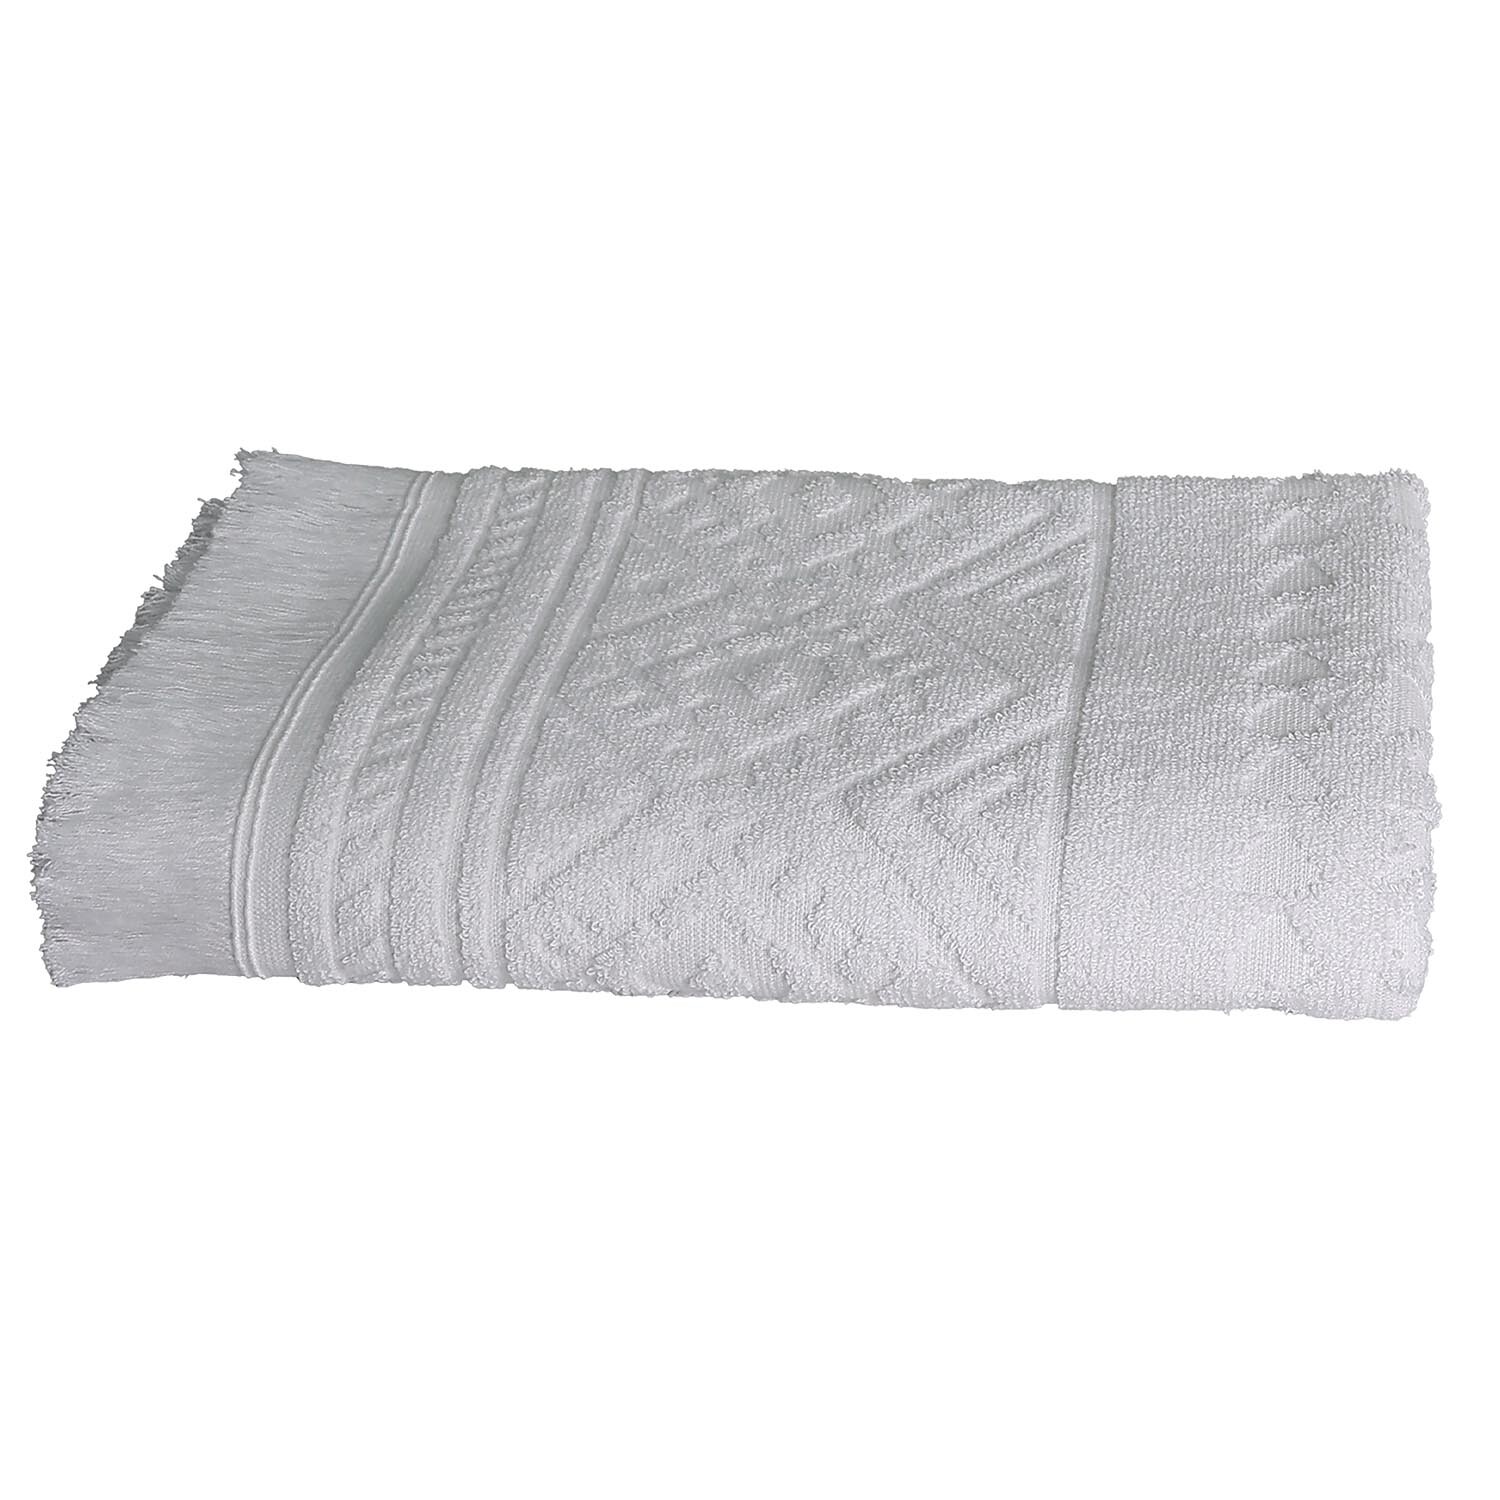 Aztec Fringe Bath Towel - White Image